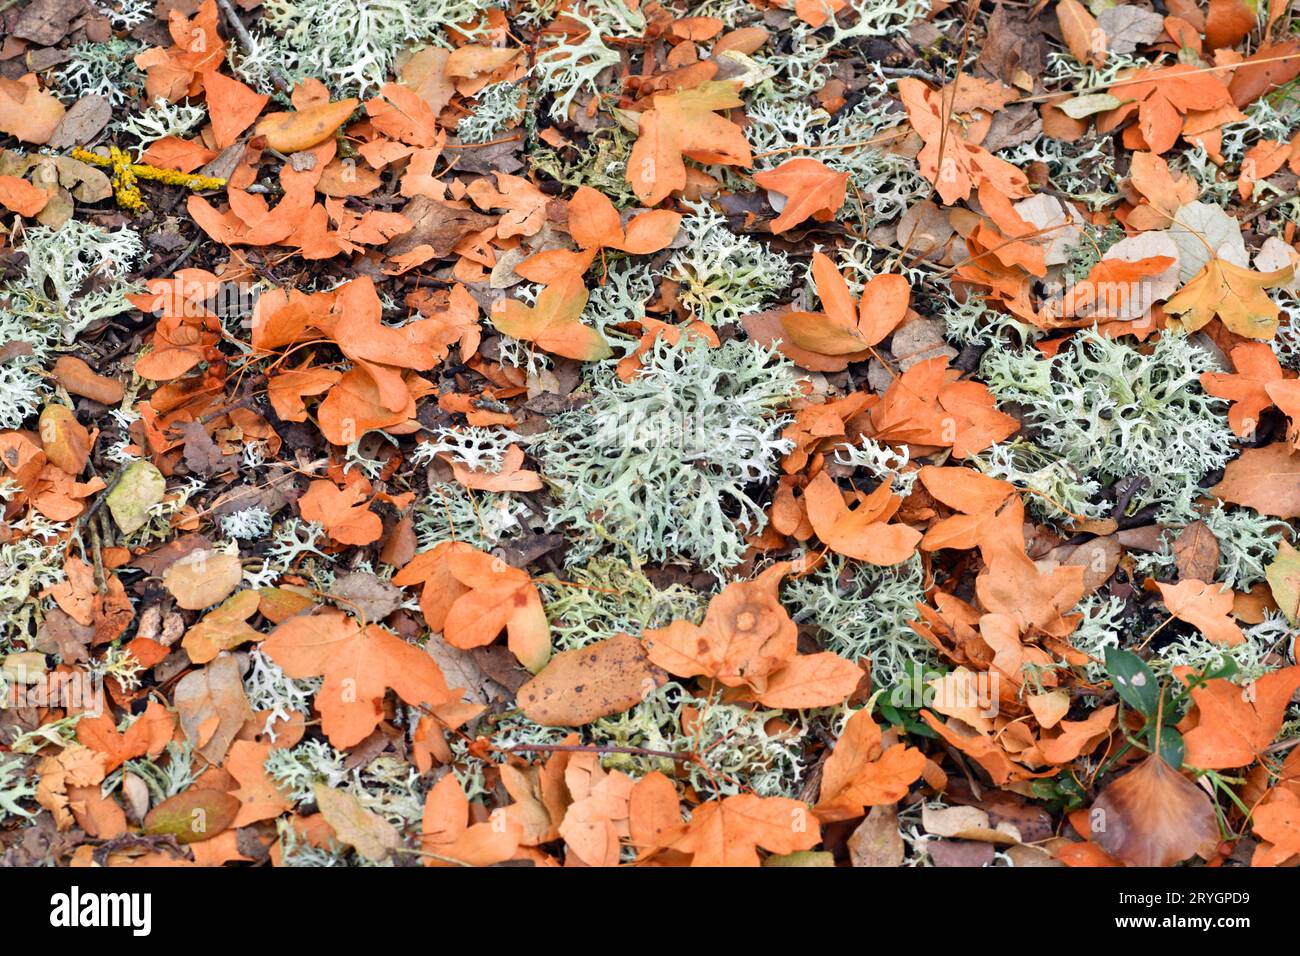 Foglie secche dell'acero di Montpellier (Acer monspessulanum) insieme ai licheni sul terreno. Foto Stock